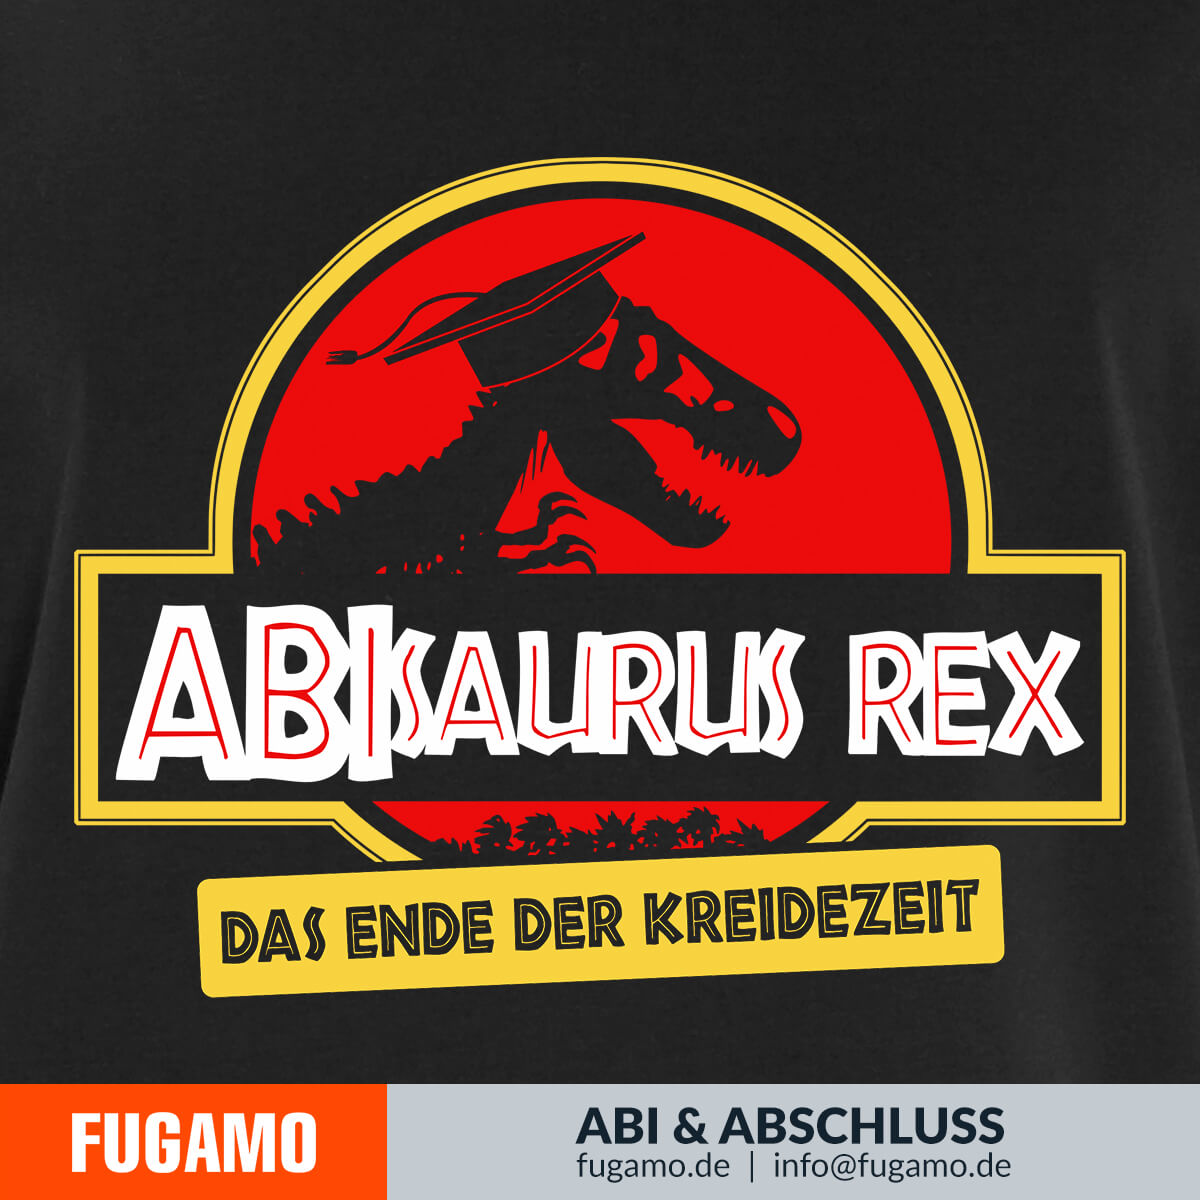 ABIsaurus Rex 01 - Das Ende der Kreidezeit